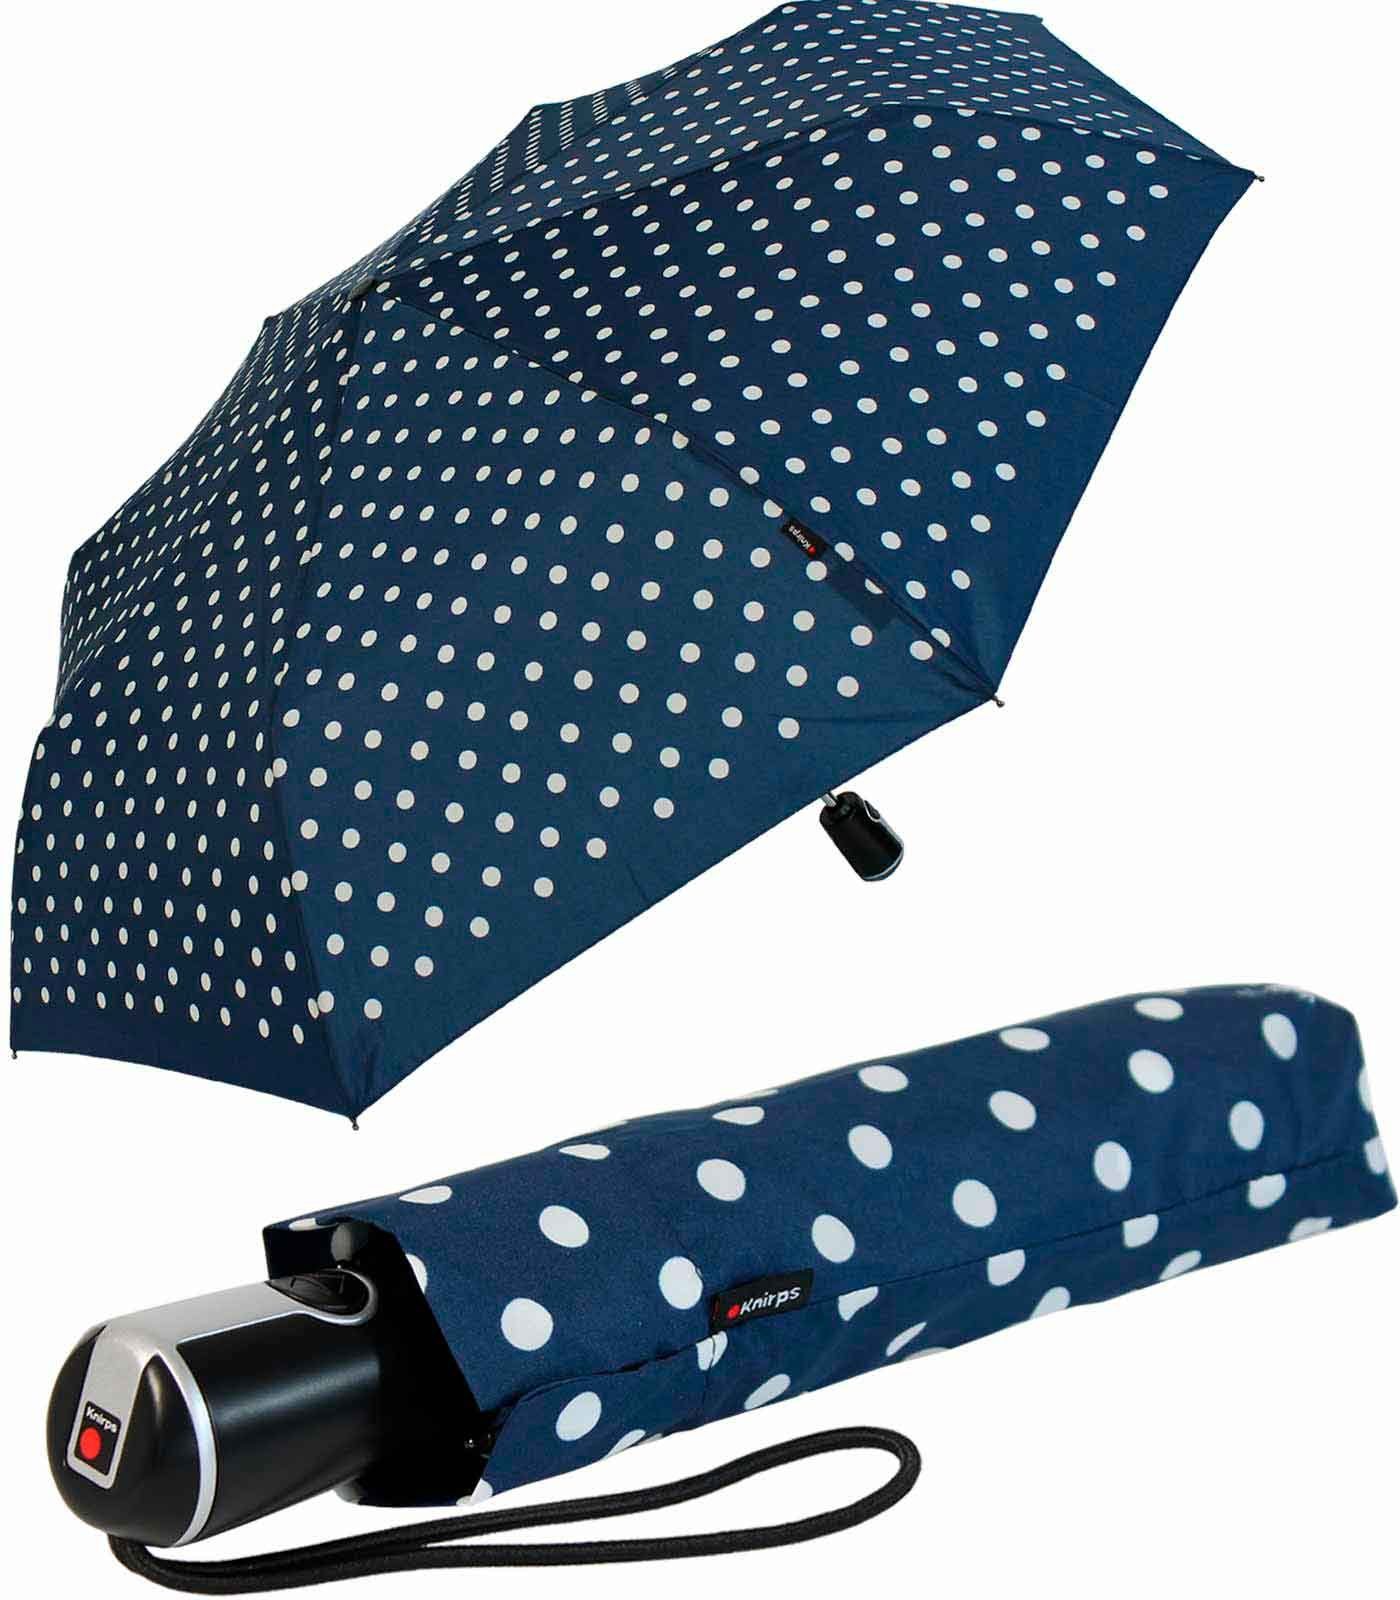 Knirps® Taschenregenschirm Large Duomatic mit Auf-Zu-Automatik - Polka Dots, der große, stabile Begleiter blau-weiß